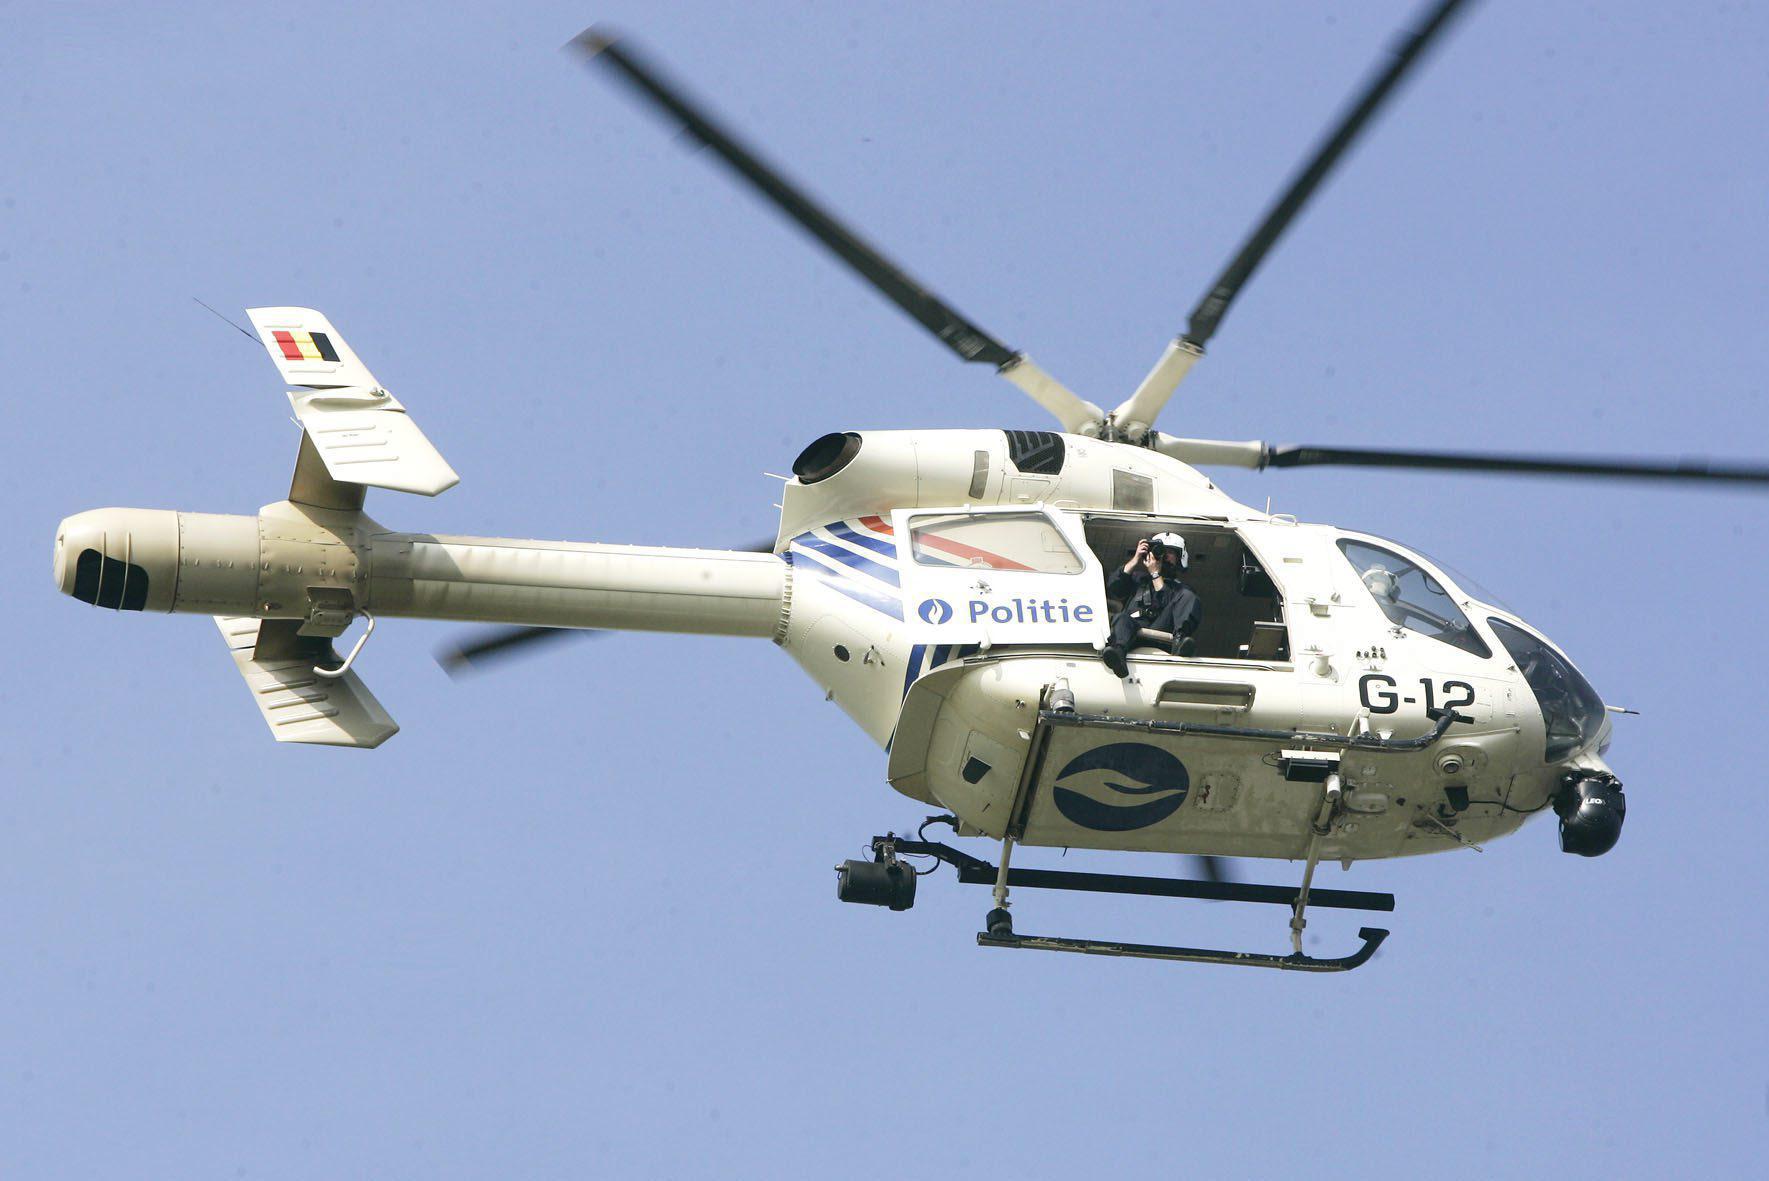 Dieven slaan hun slag tijdens provinciale anti-inbraakactie, ook helikopter kan ze niet meer vinden